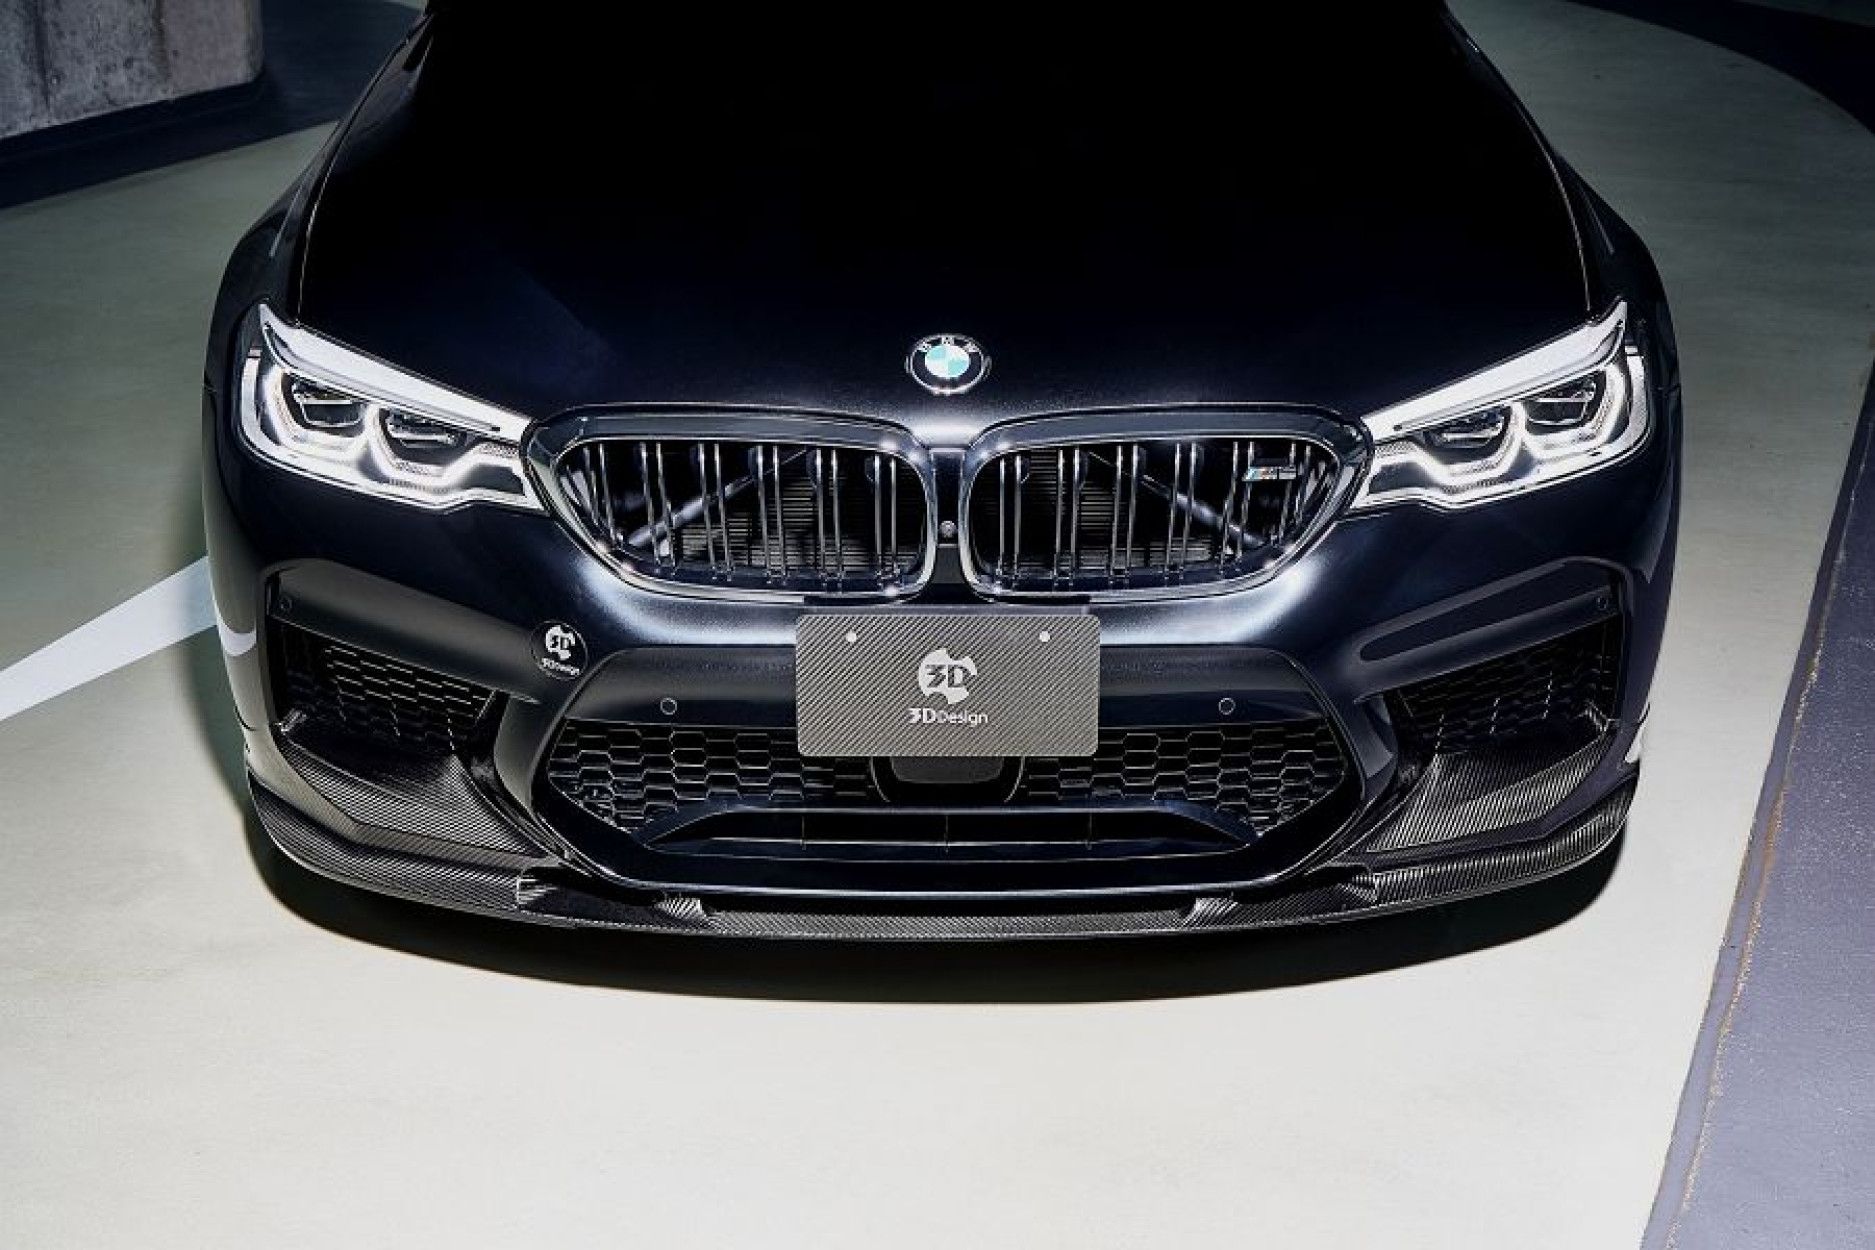 3DDesign Carbon Frontlippe für BMW F90 M5 - online kaufen bei CFD